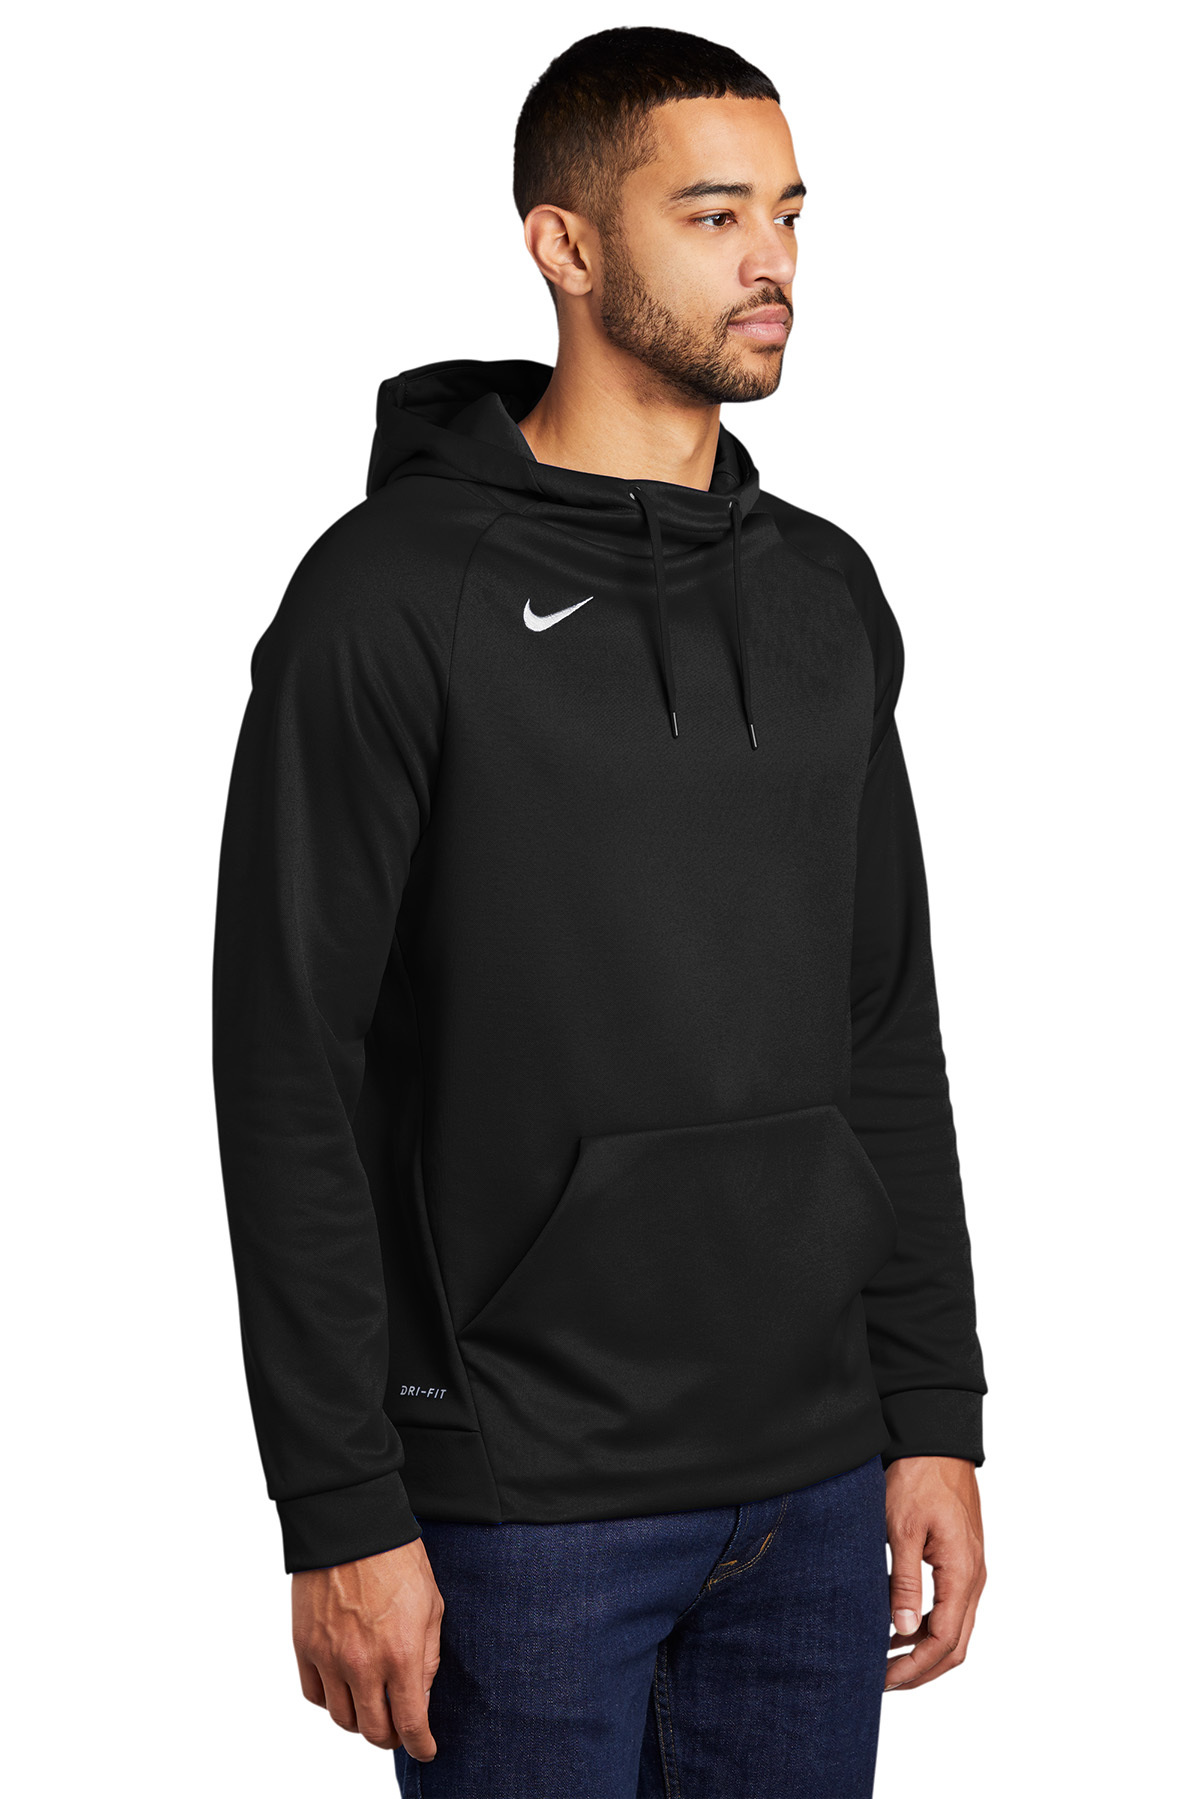 Nike Therma-FIT Pullover Fleece Hoodie | Hoodie | Sweatshirts/Fleece ...